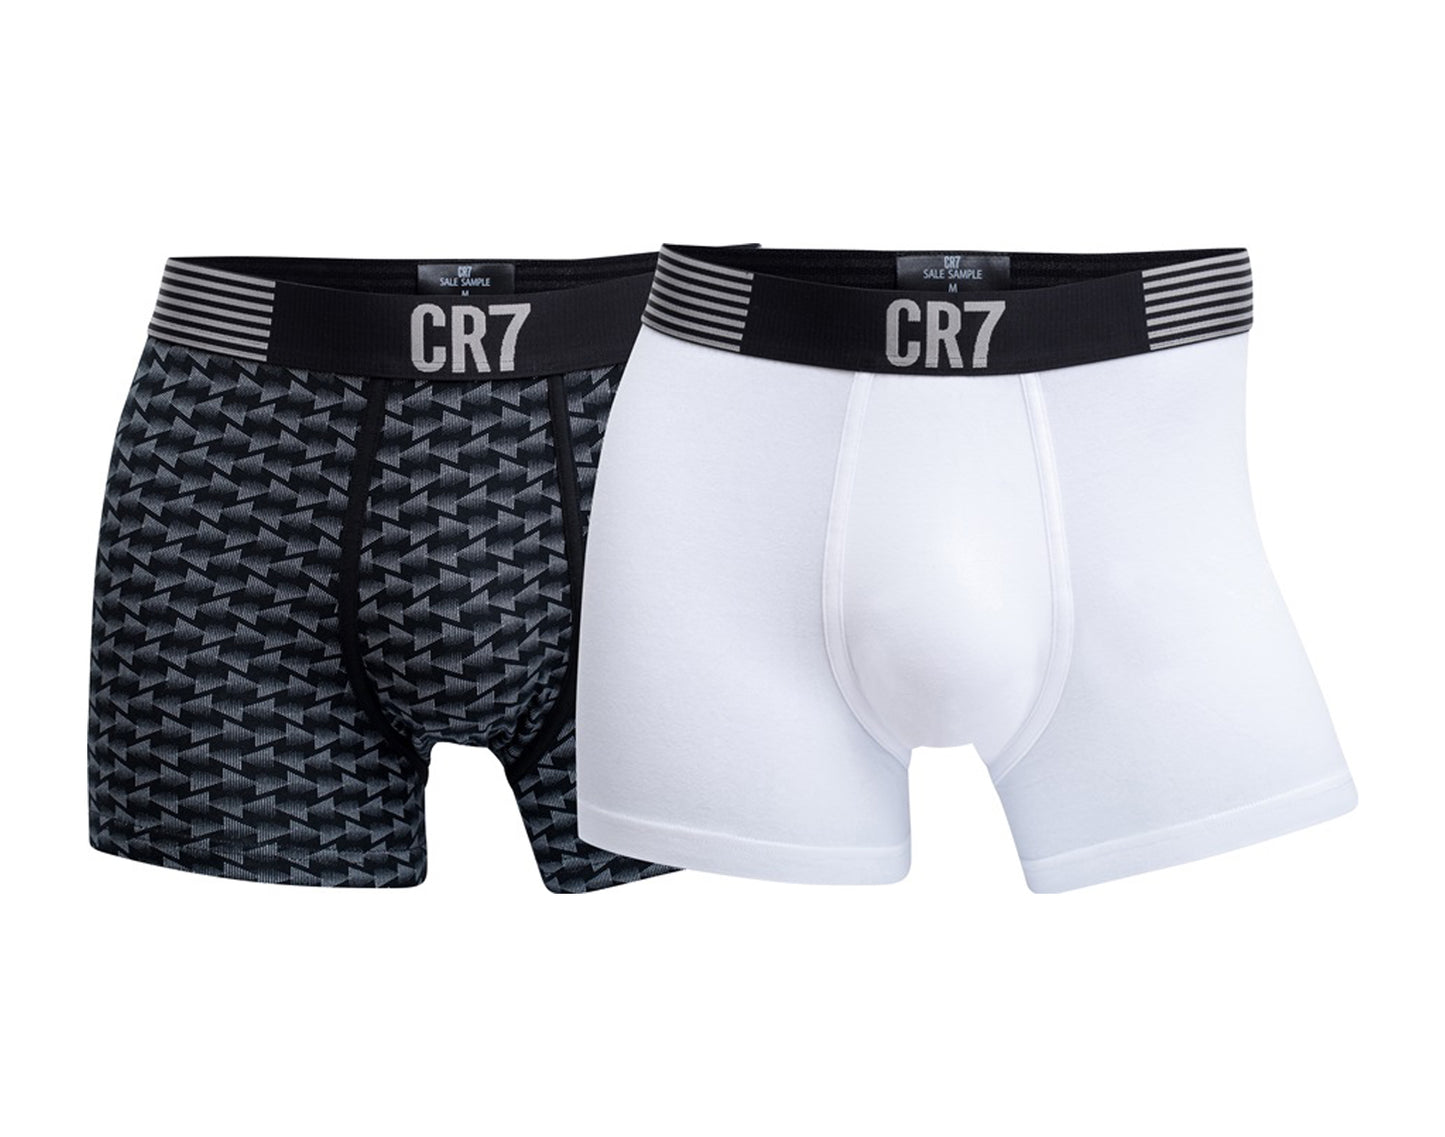 Cristiano Ronaldo CR7 2-Pack Boxer Briefs Black/White Men's Underwear 8302-49-535